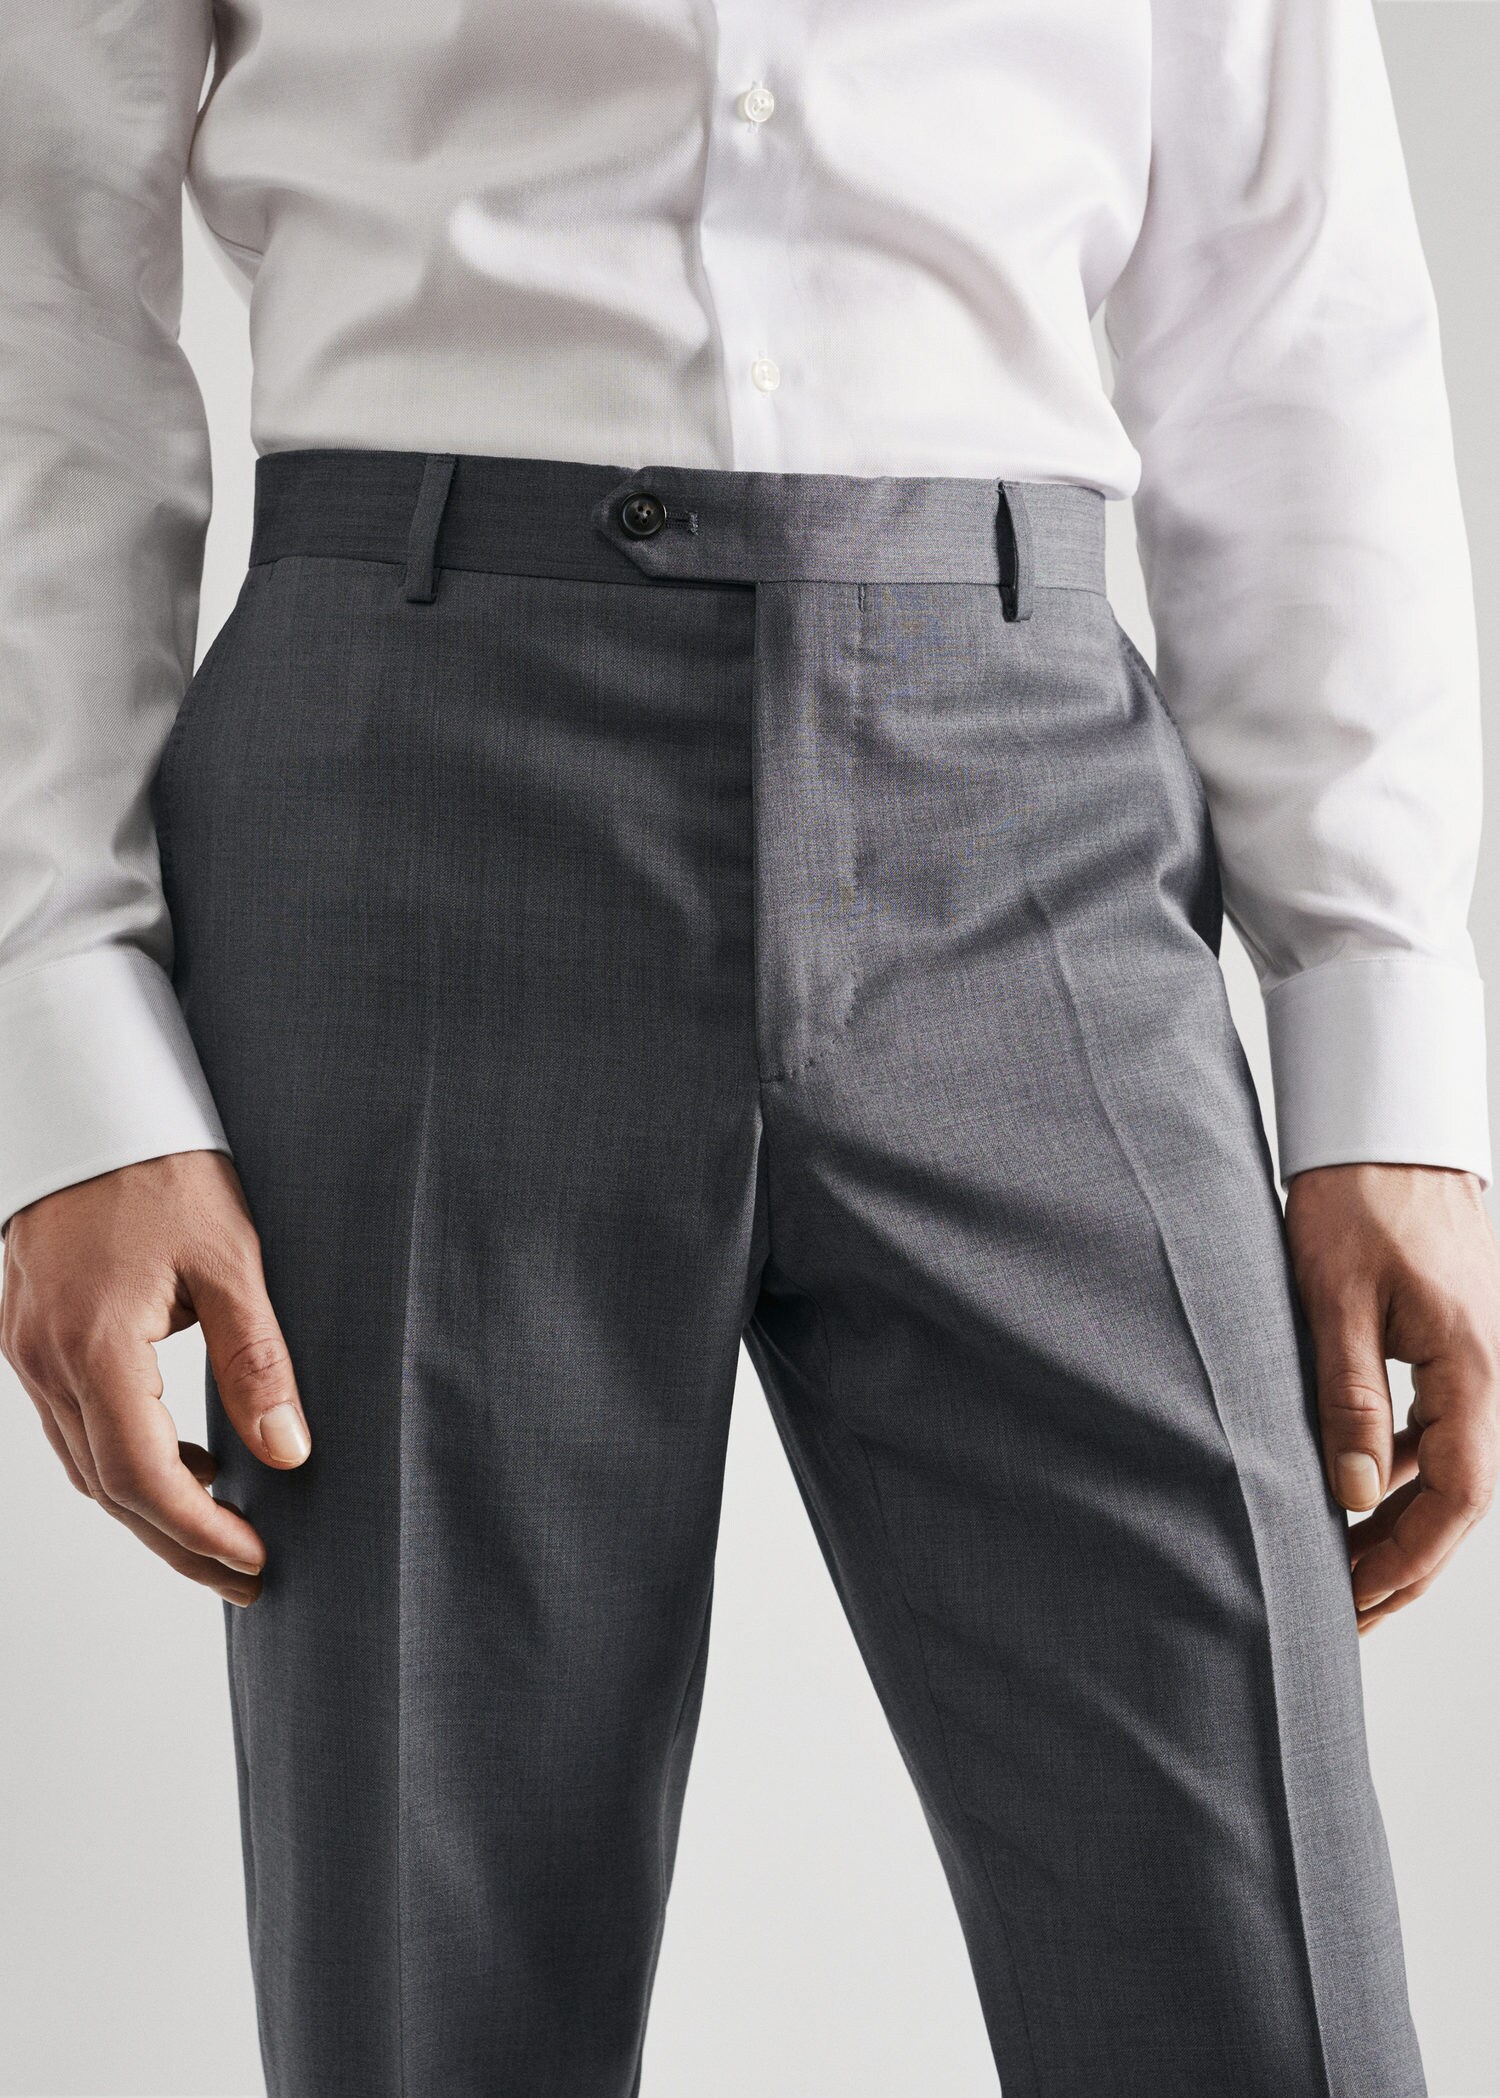 Pantalón traje slim fit lana virgen - Detalle del artículo 1